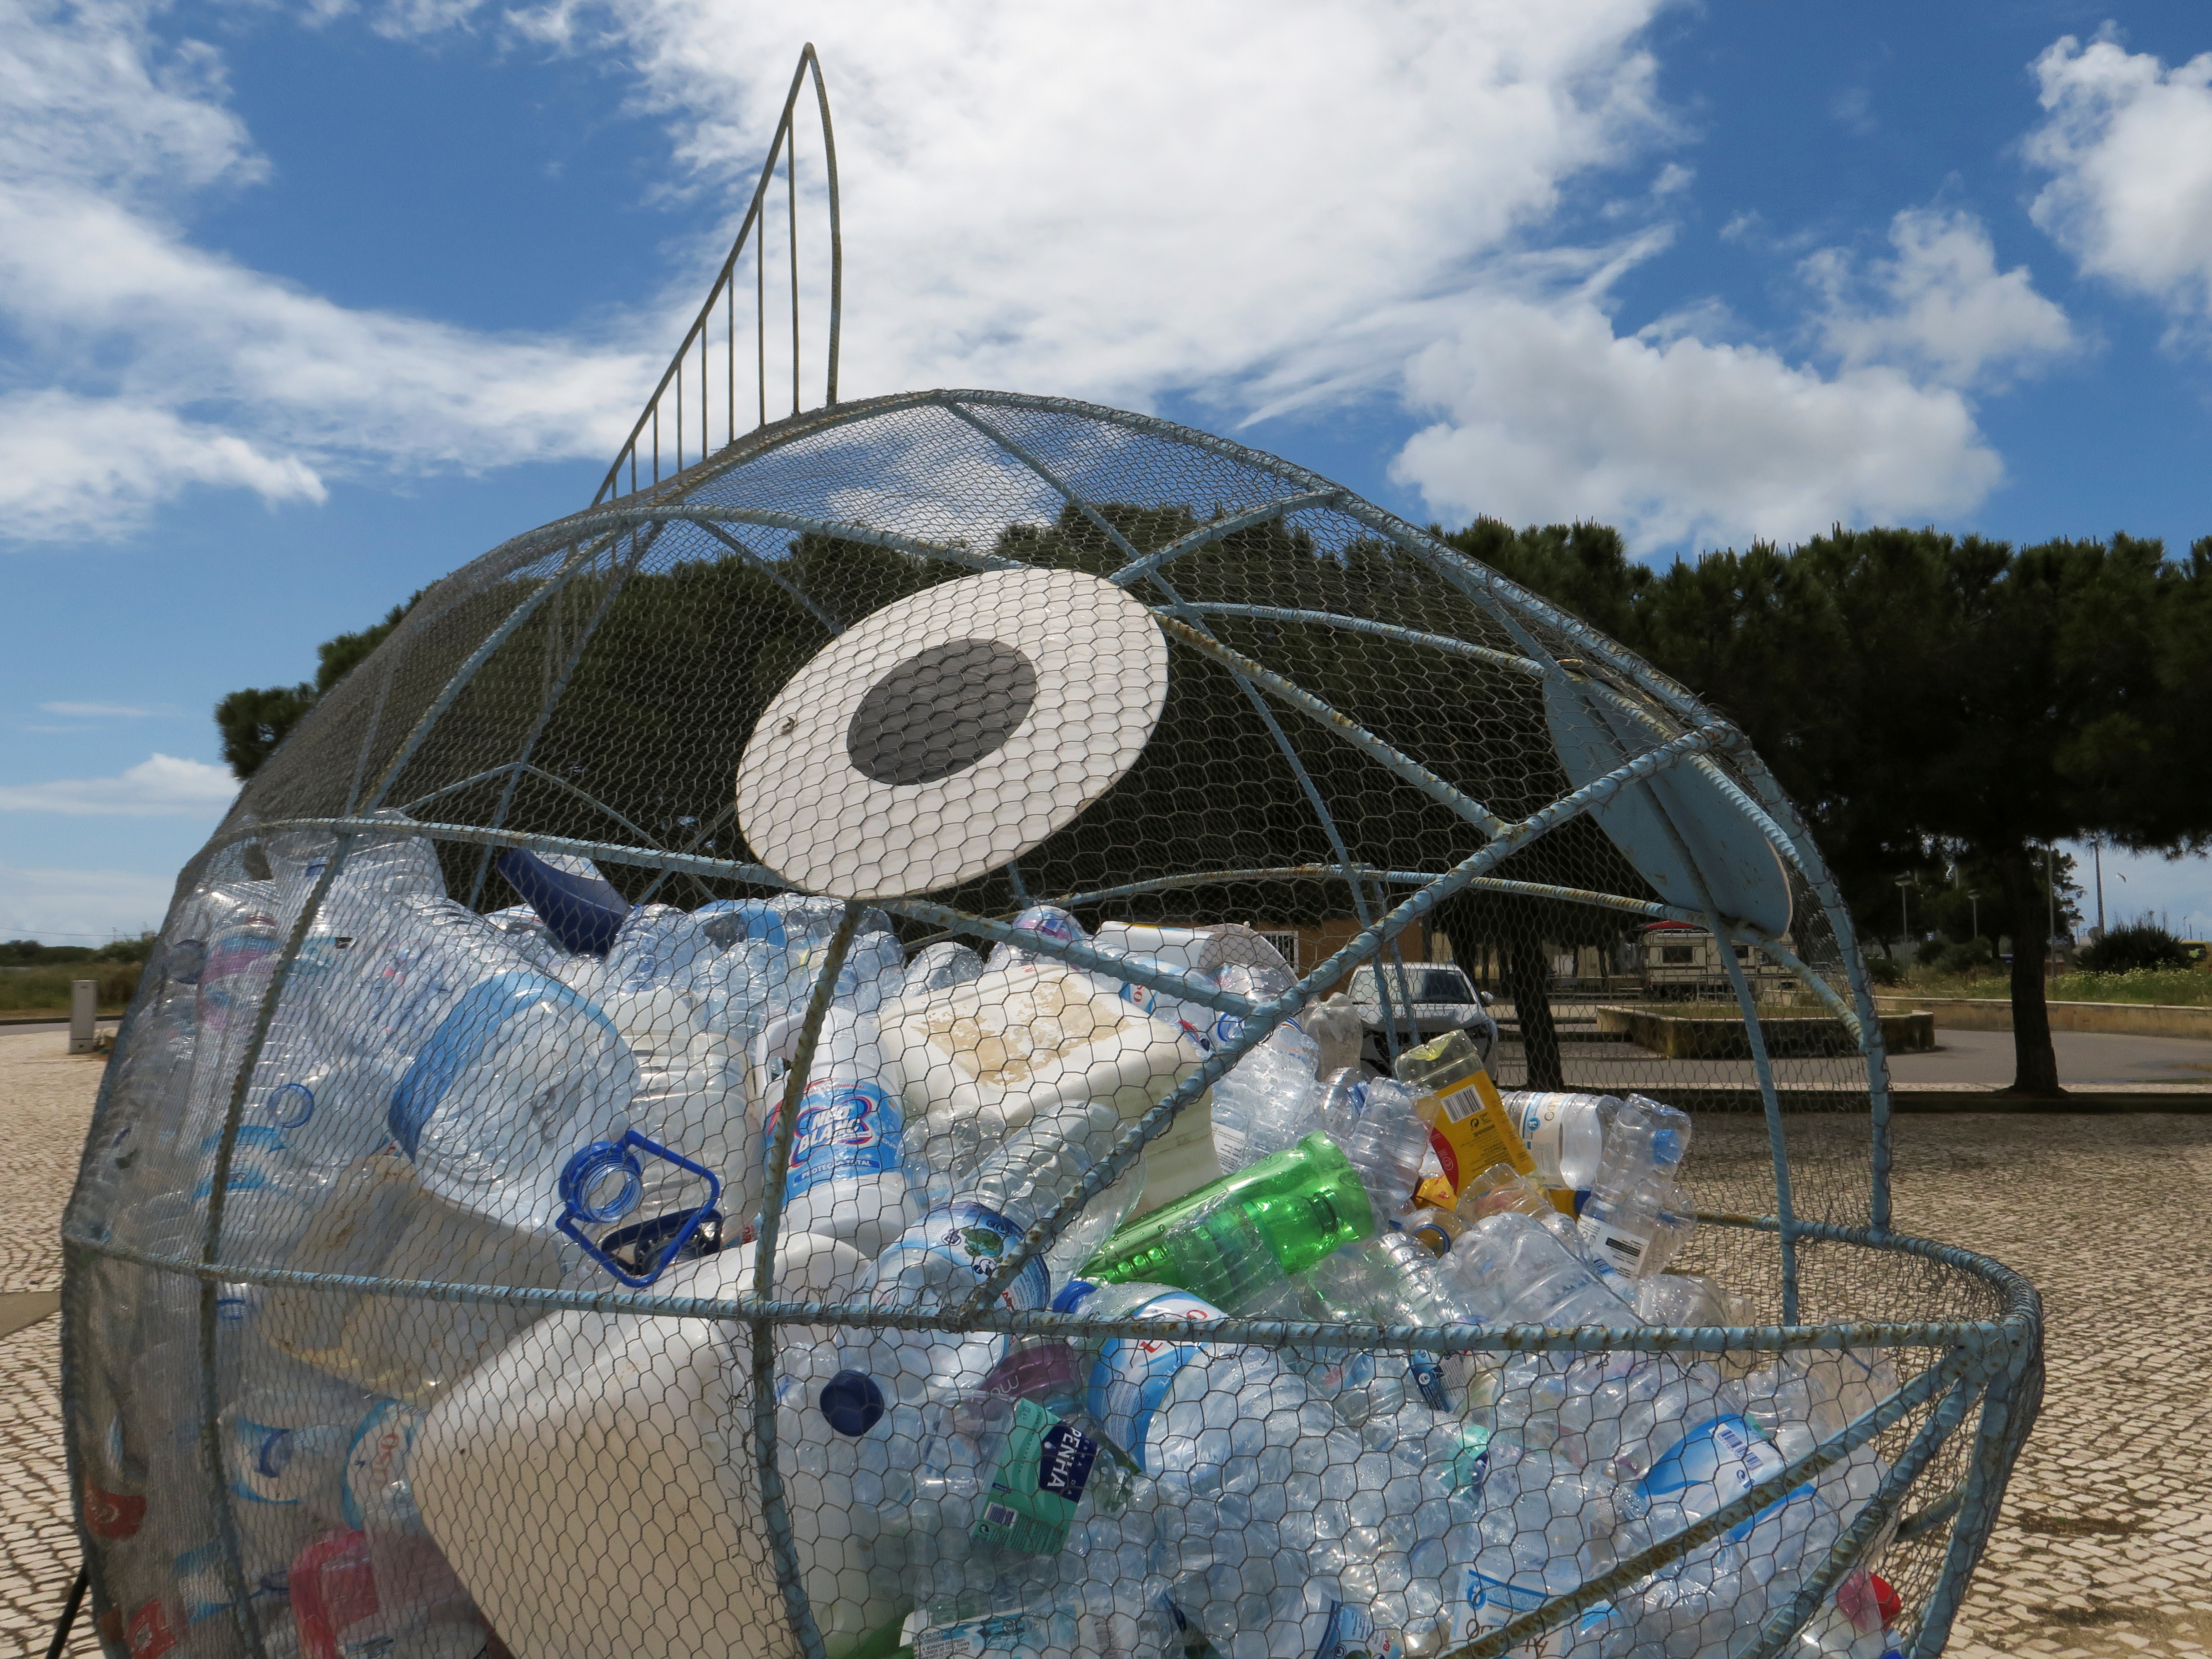 La campaña fue creada en 2011 en Australia por Rebecca Prince-Ruiz, una ecologista que tras visitar una planta de reciclaje se dio cuenta de la gravedad de la problemática de los residuos (Reuters)